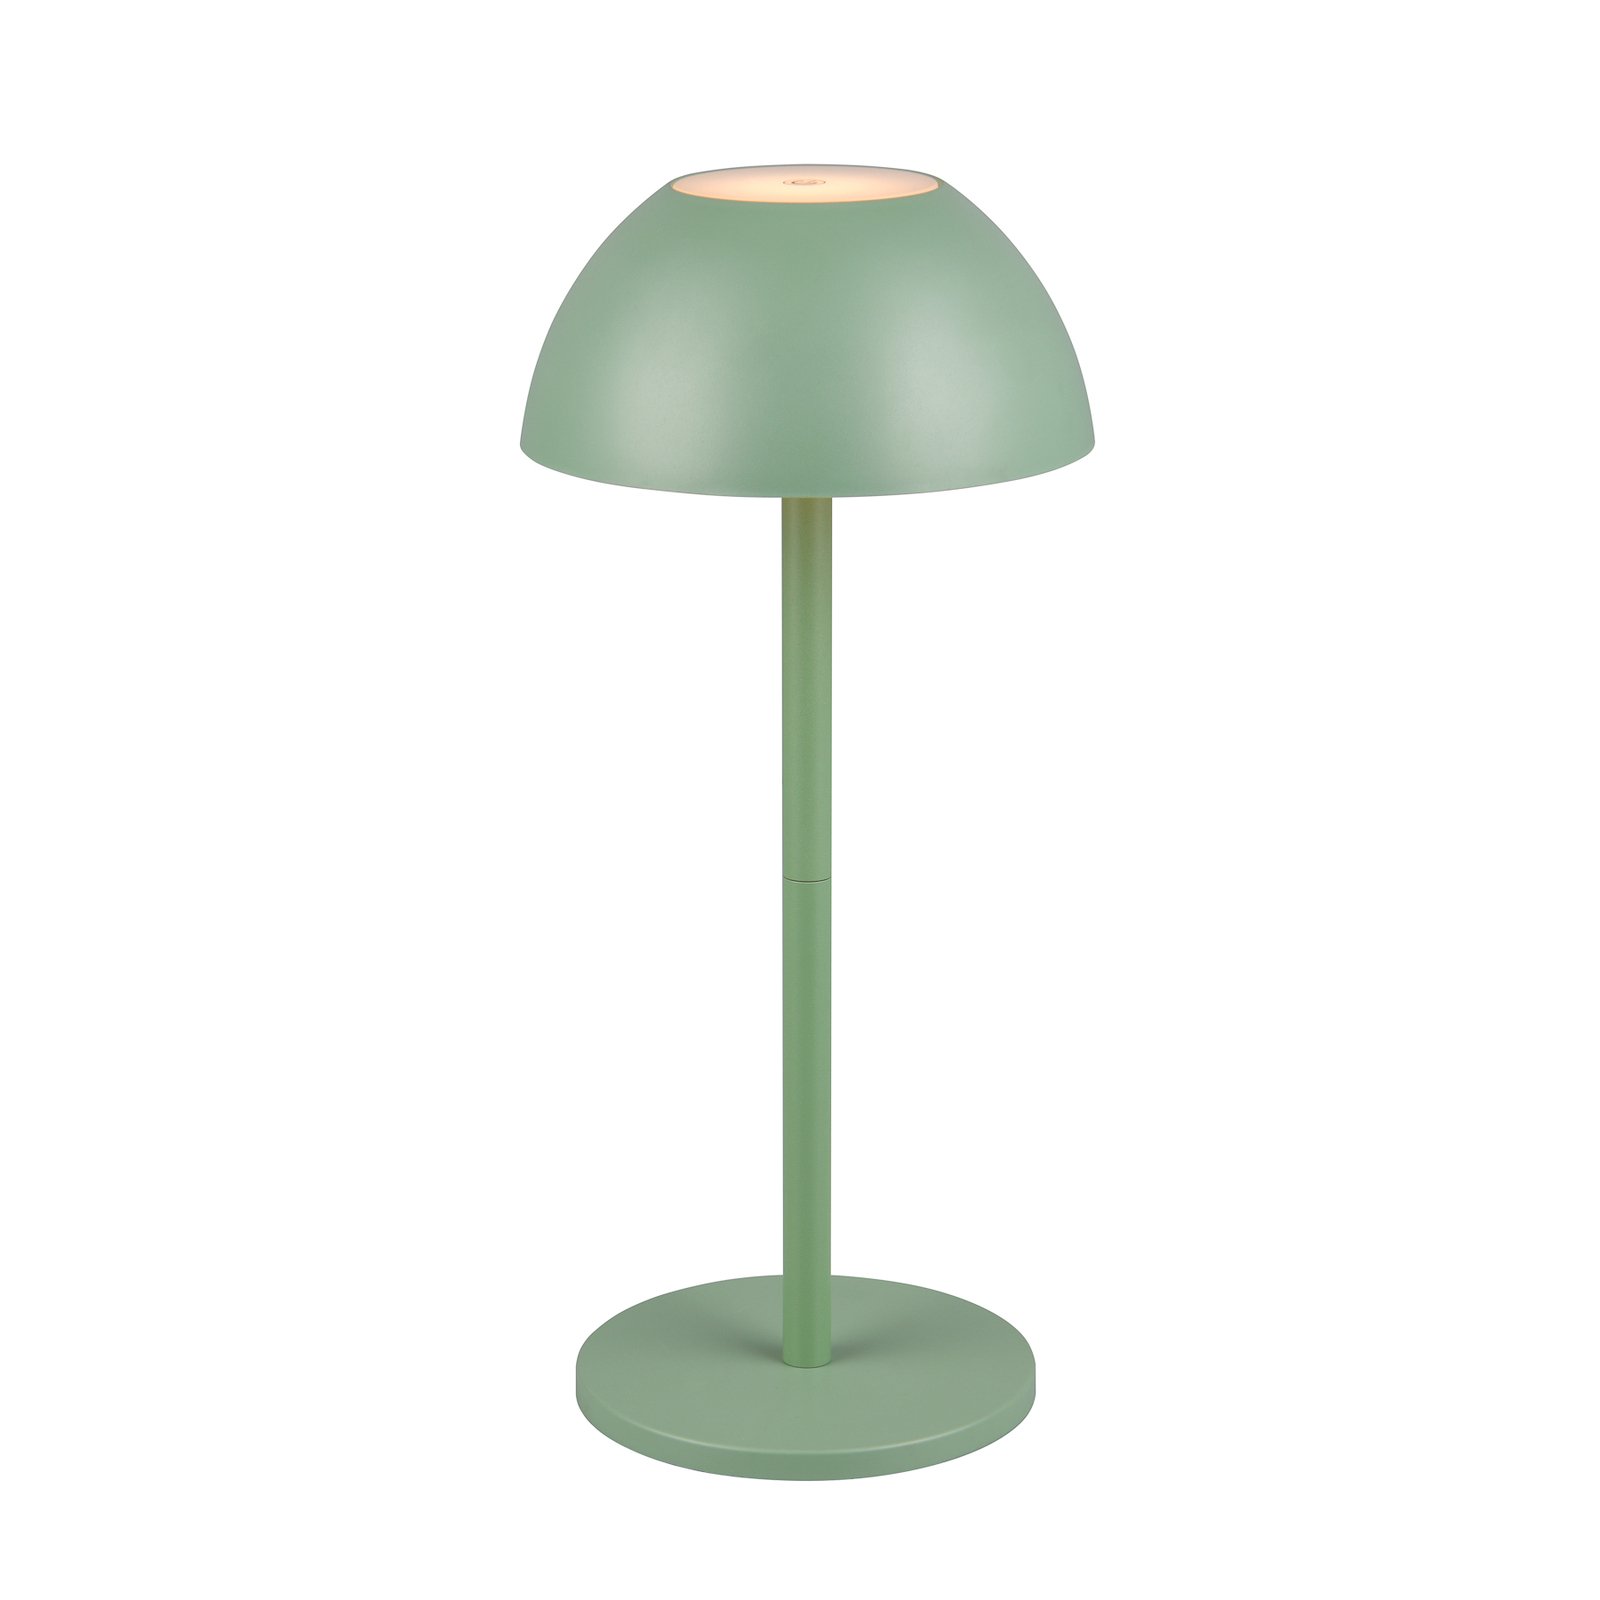 Ricardo LED oppladbar bordlampe, grønn, høyde 30 cm, plast